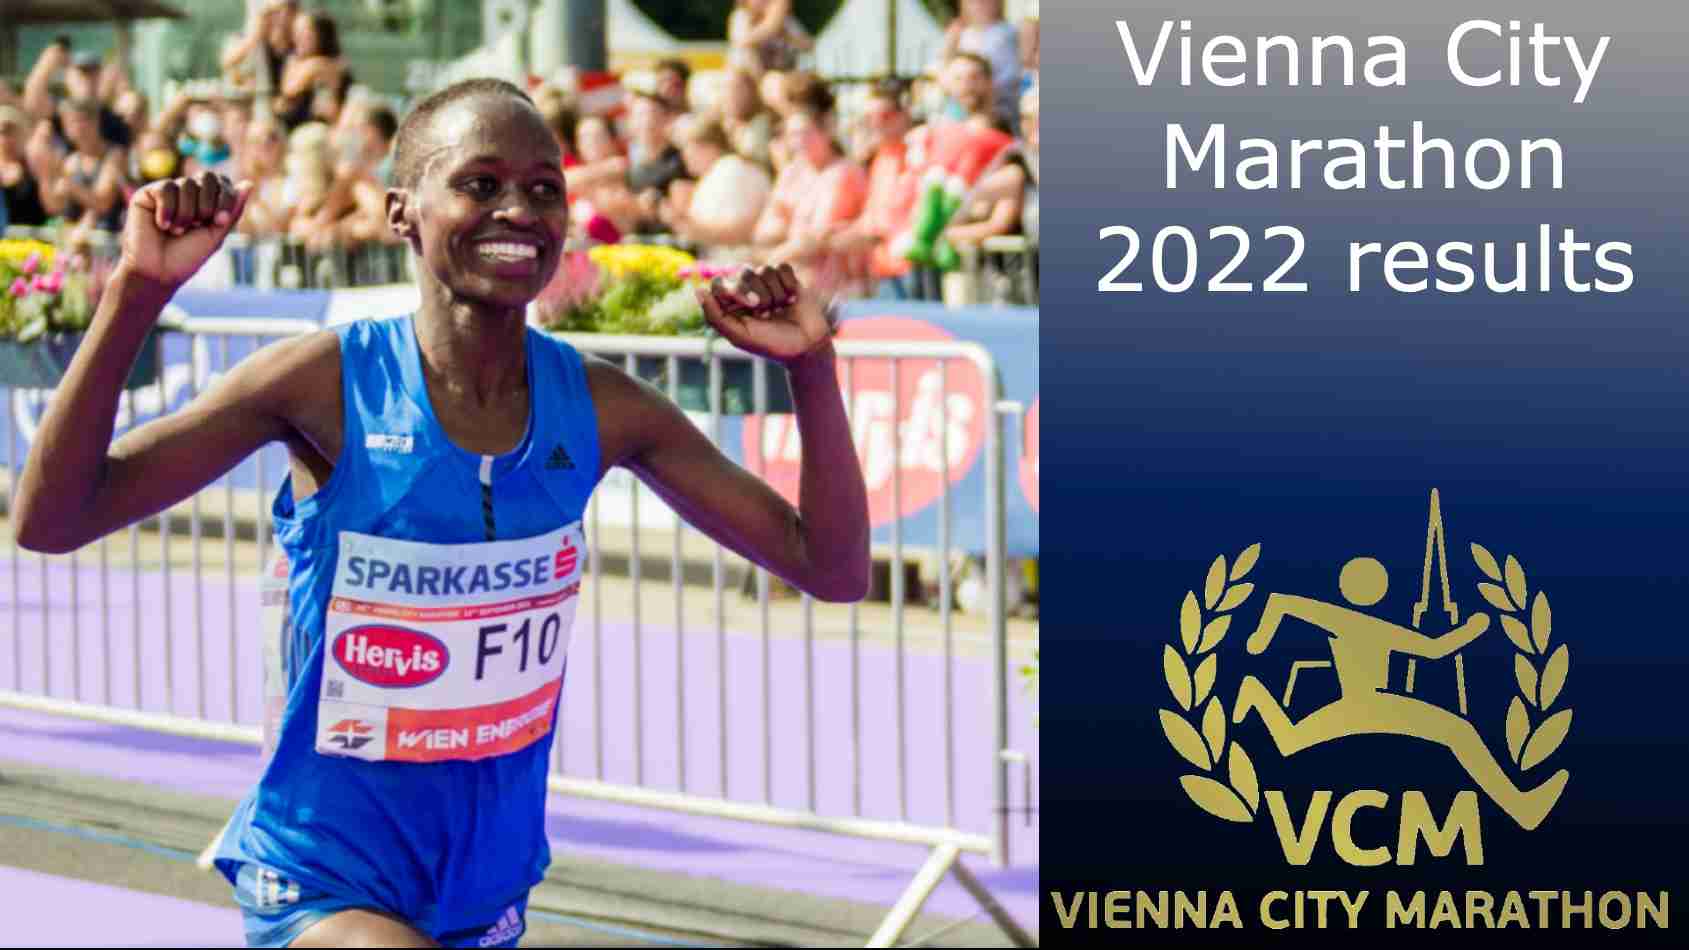 Vienna City Marathon 2022 results; Chepkurui, Muteti win titles